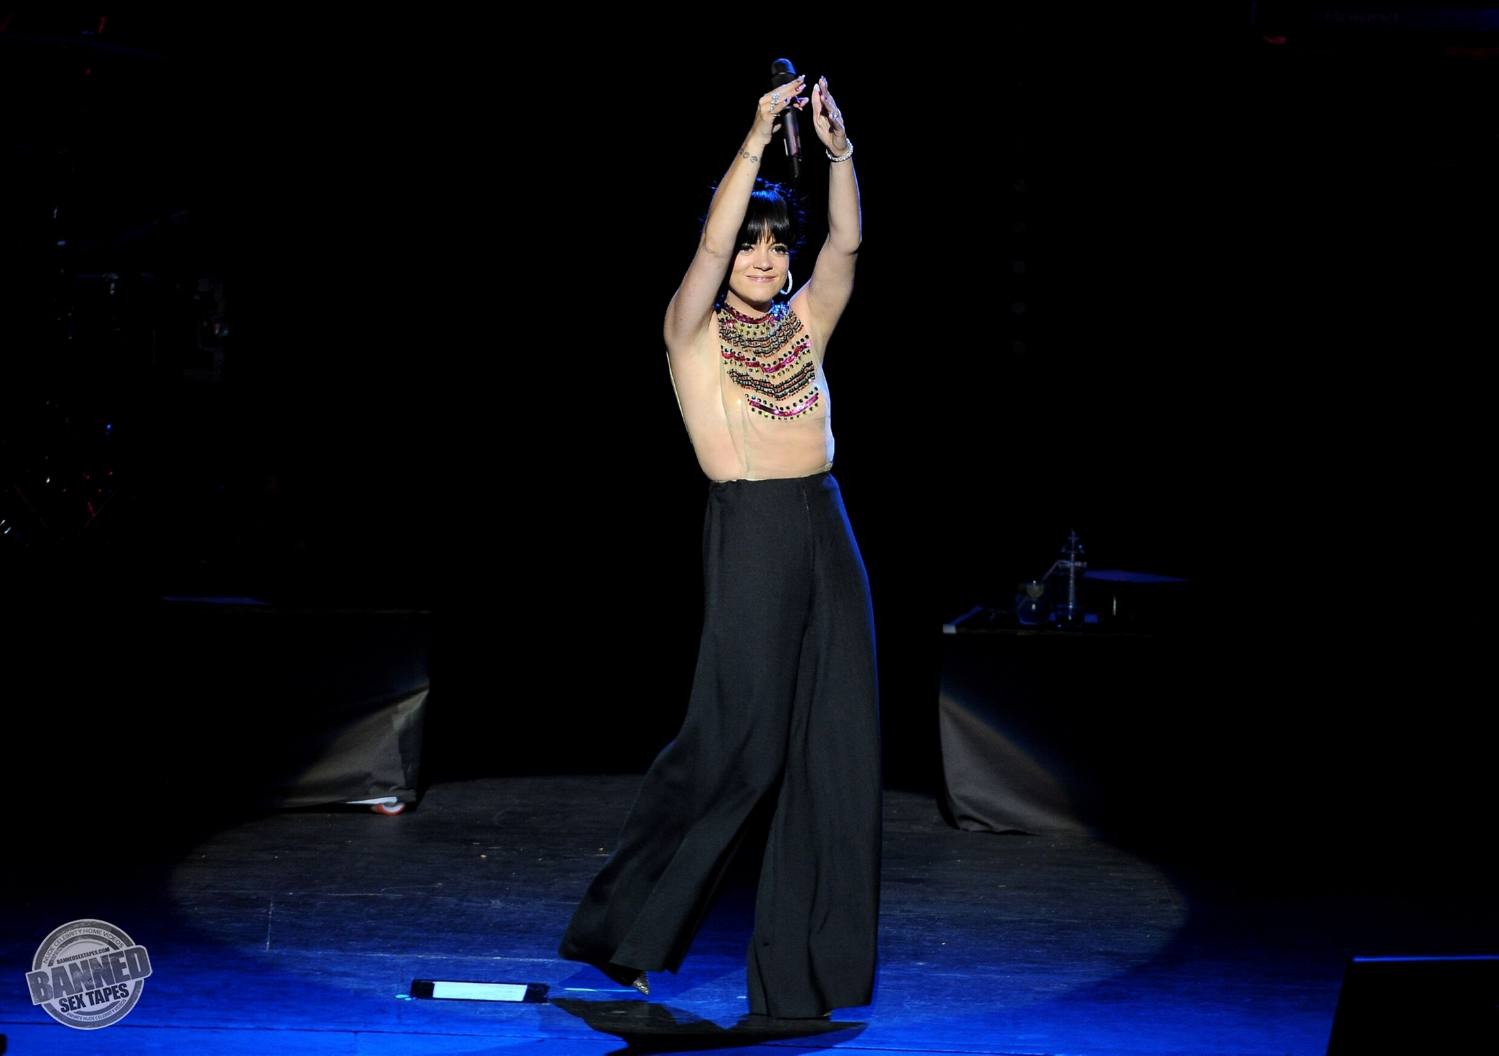 Lily allen montre ses seins nus à travers un haut transparent pendant un concert
 #75191542